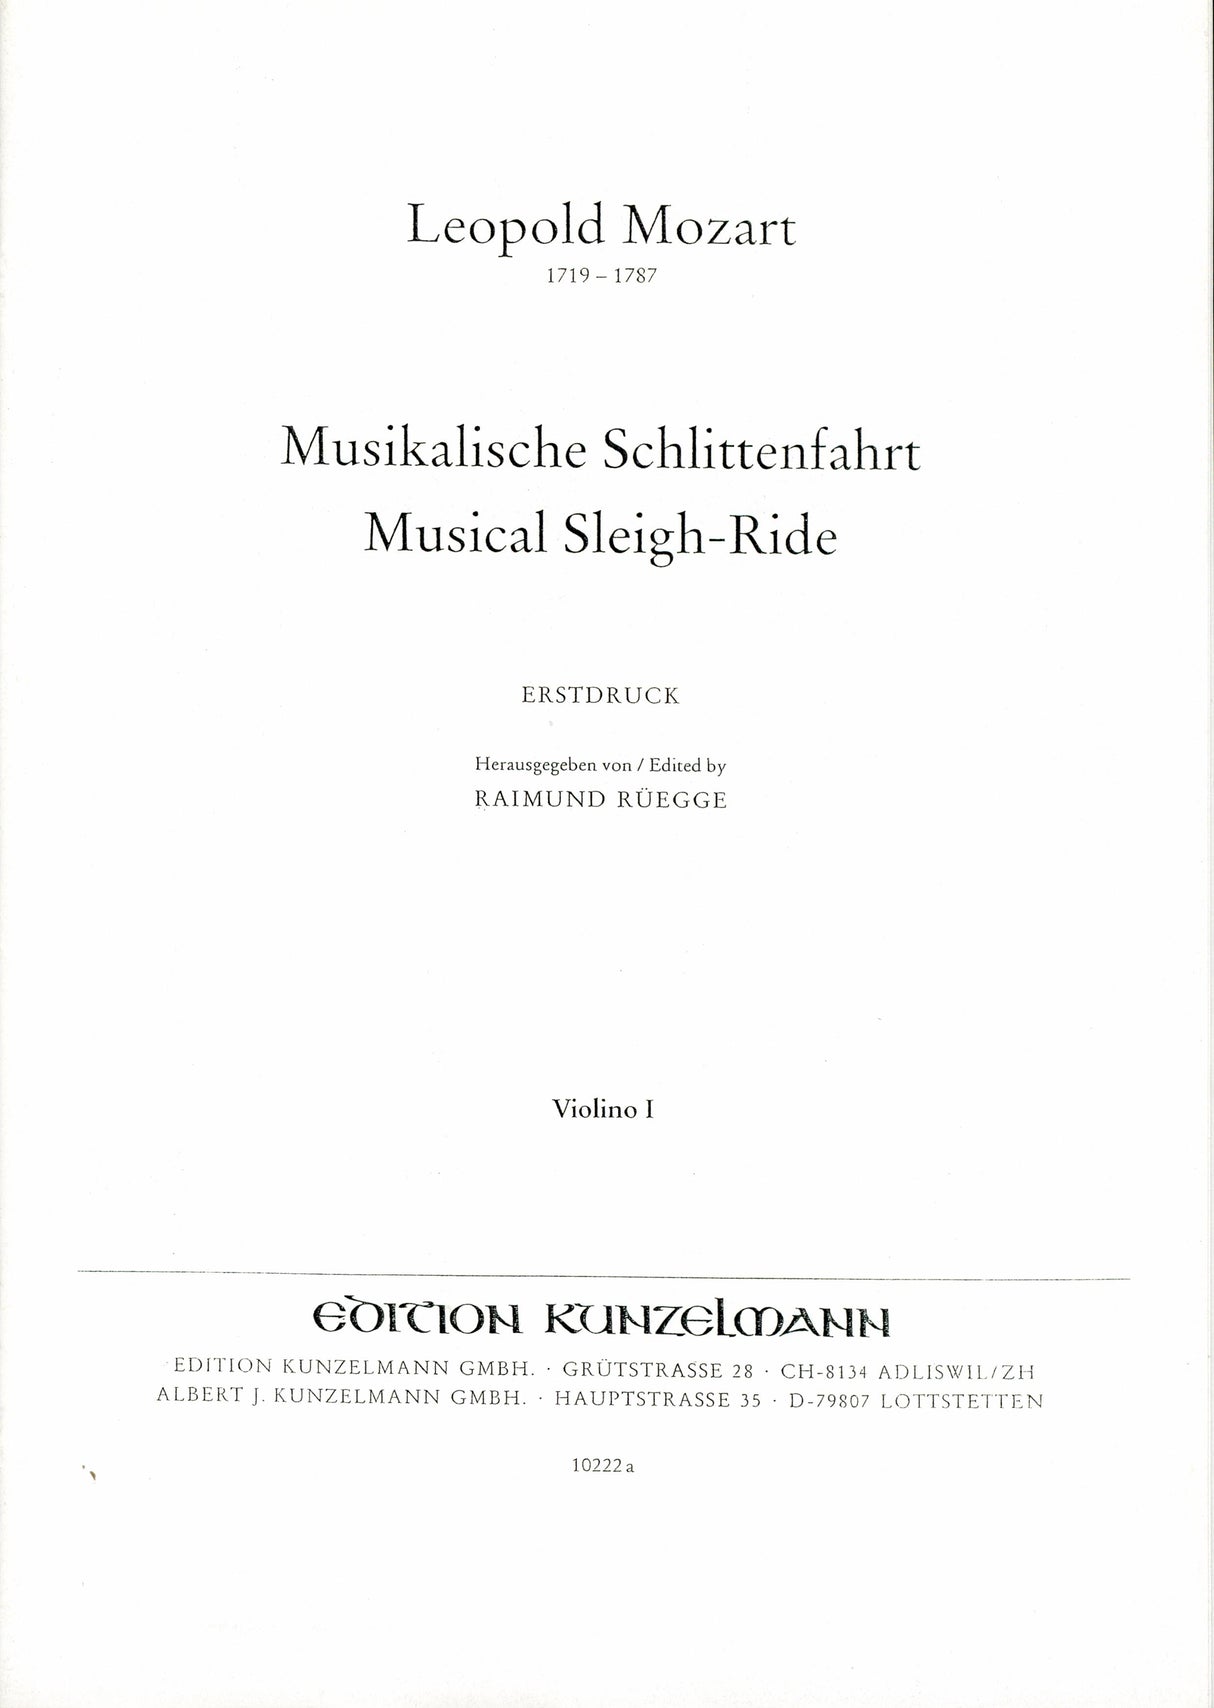 L. Mozart: Musikalische Schlittenfahrt